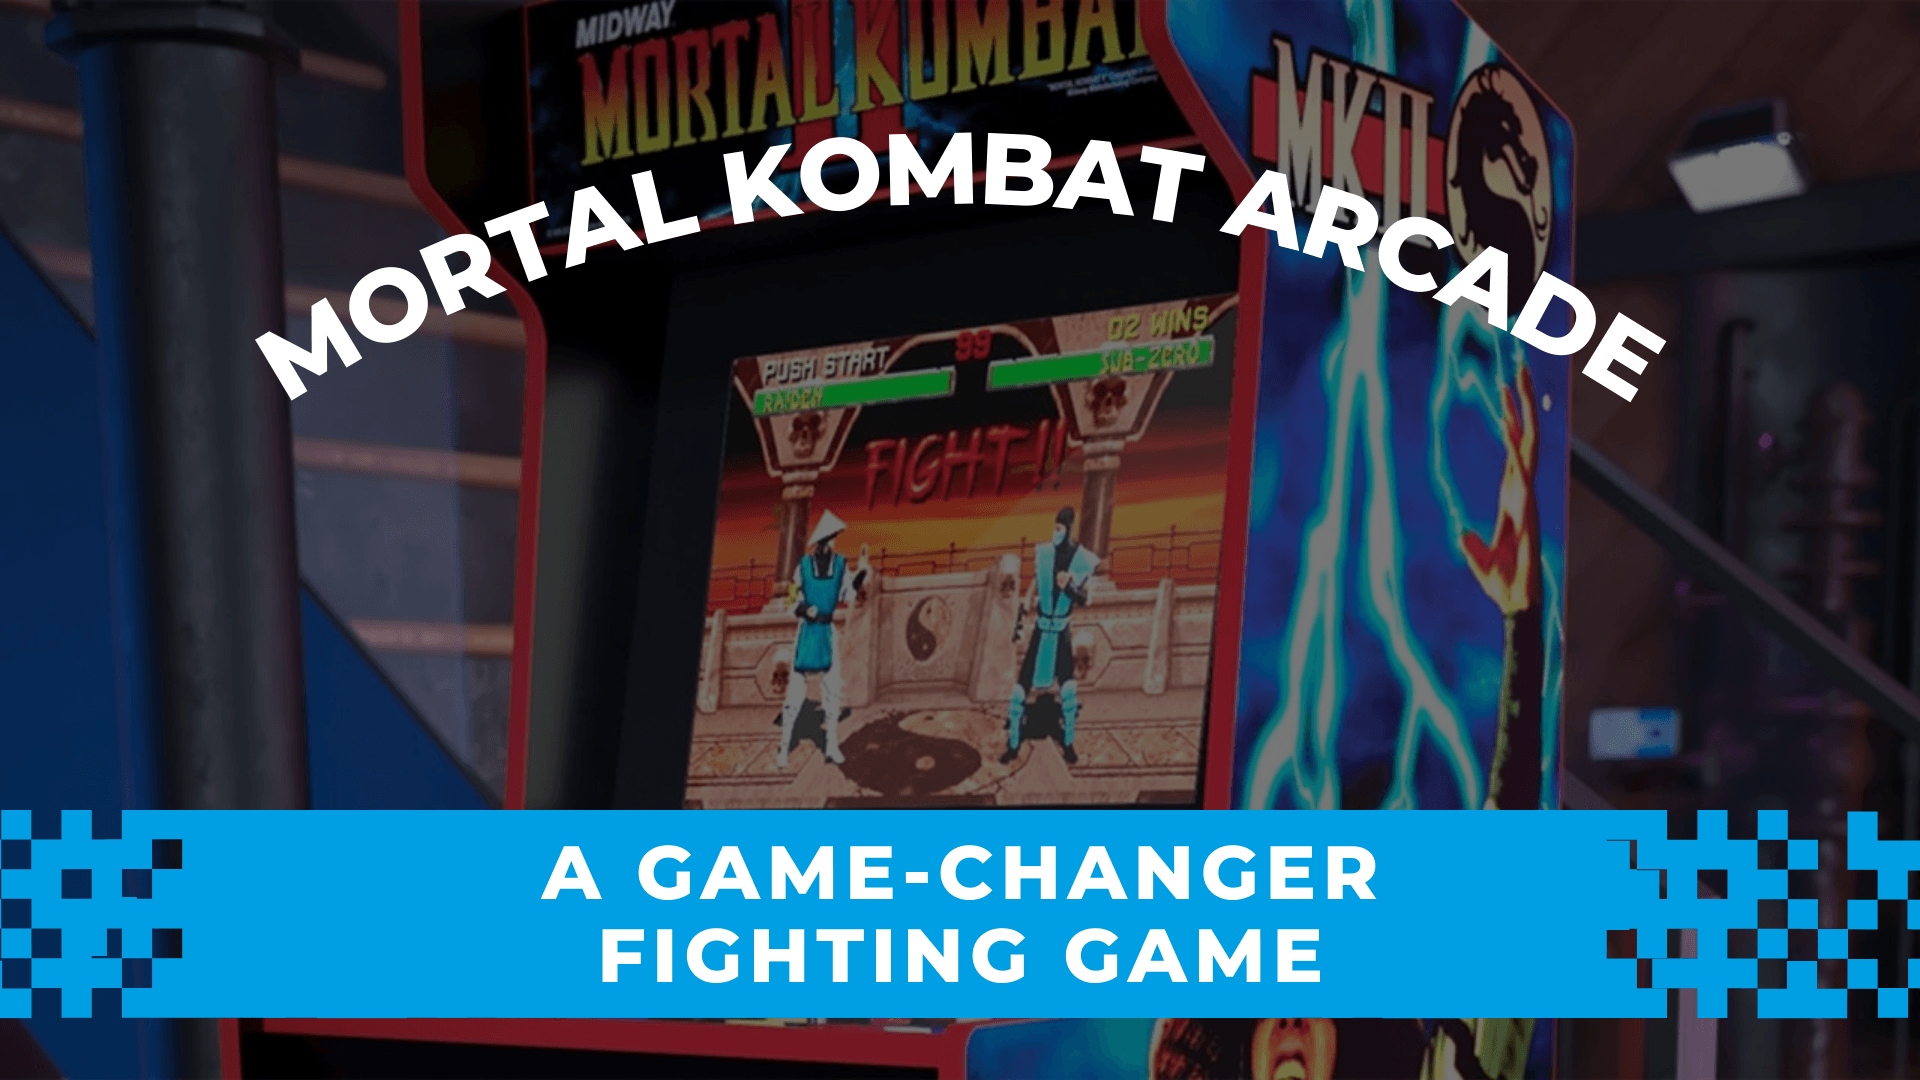 Mortal Kombat arcade: a game-changer fighting game - Gamestate